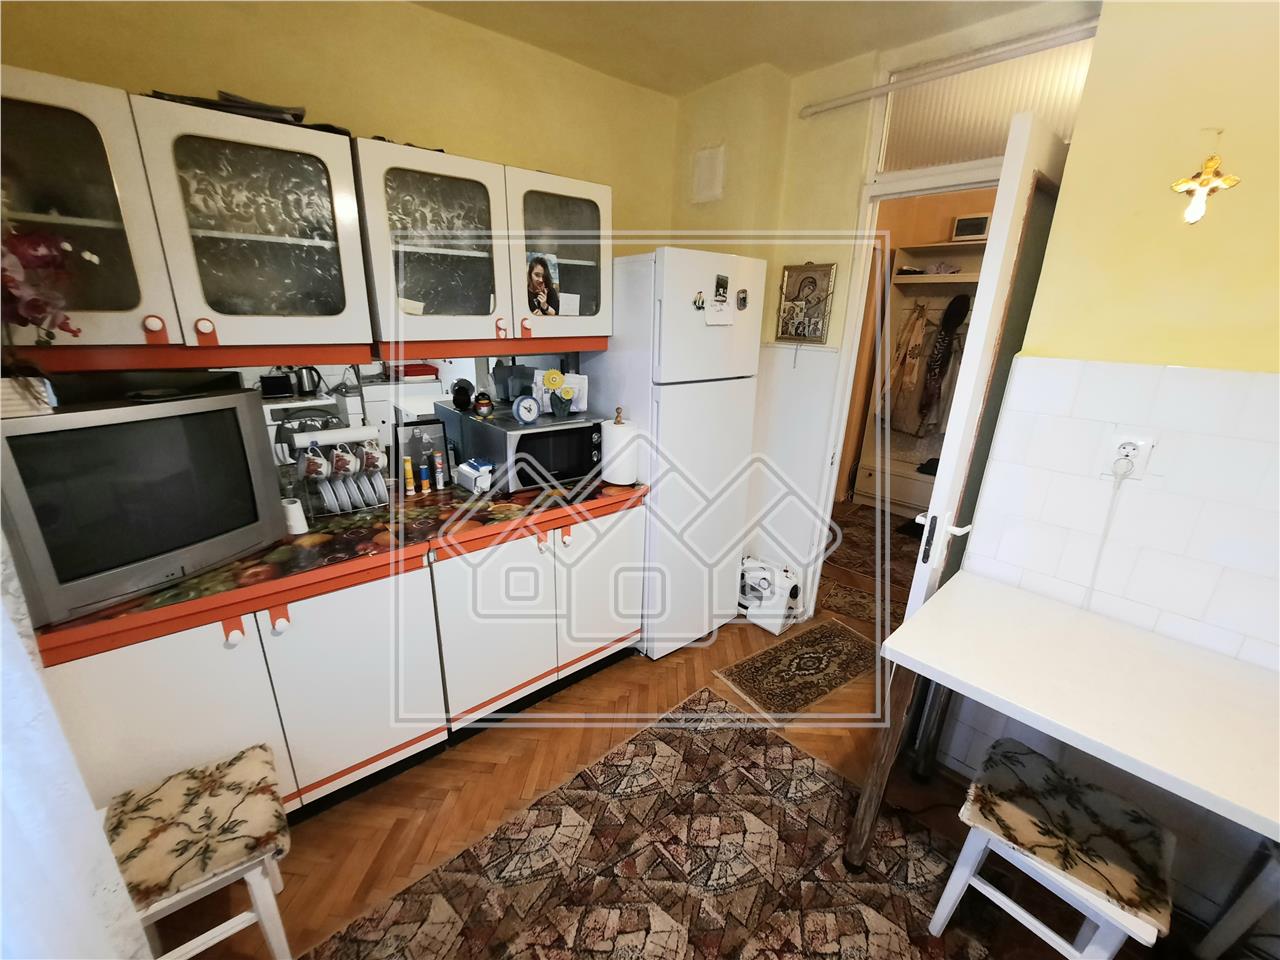 Apartament de vanzare in Alba Iulia - 3 camere - zona Tolstoi